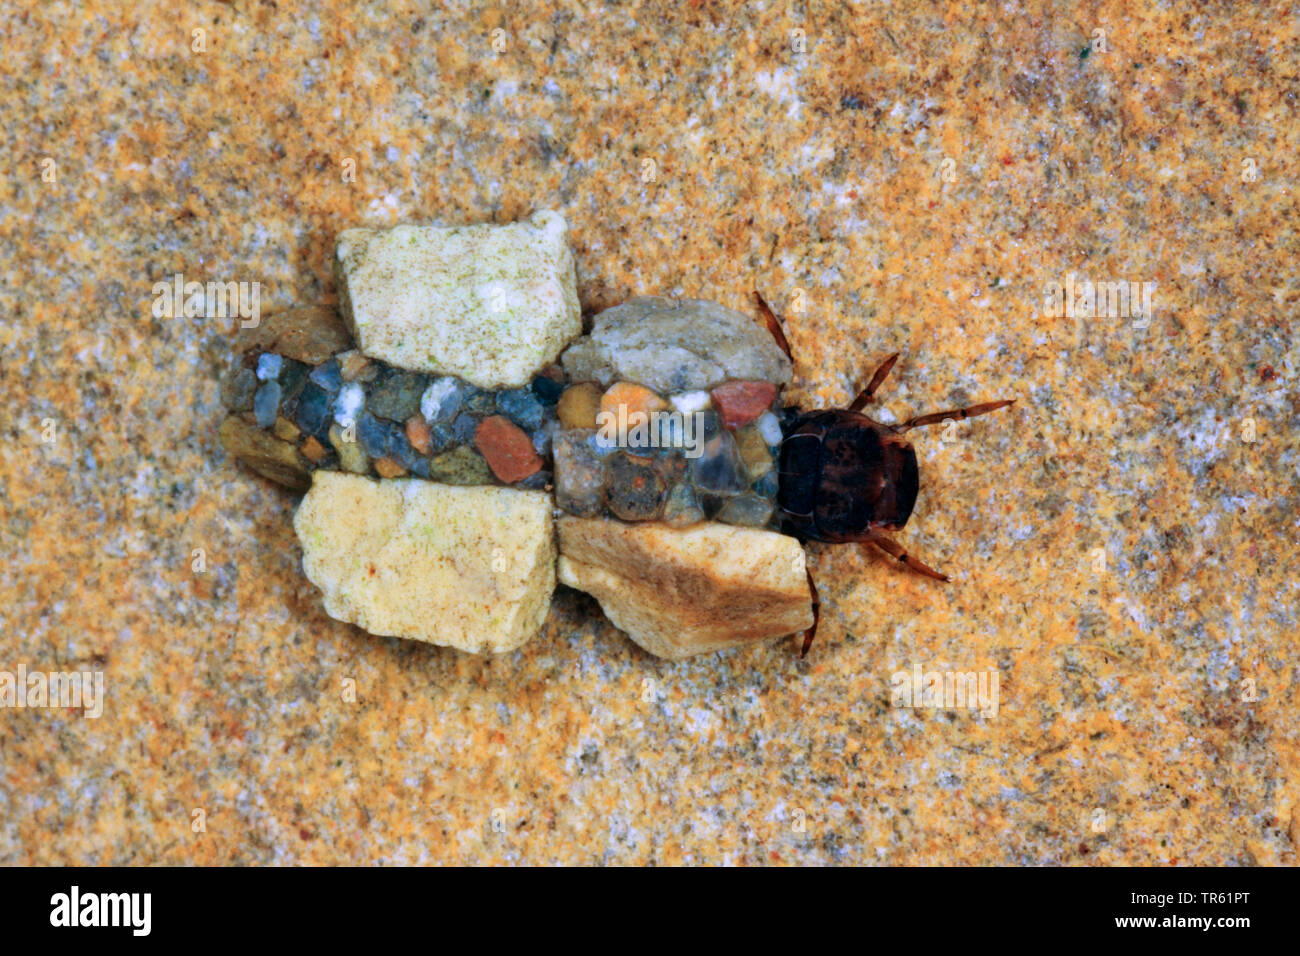 Silo nigricornis (phryganes), larves dans son affaire faite de sable et de petites pierres, Allemagne Banque D'Images